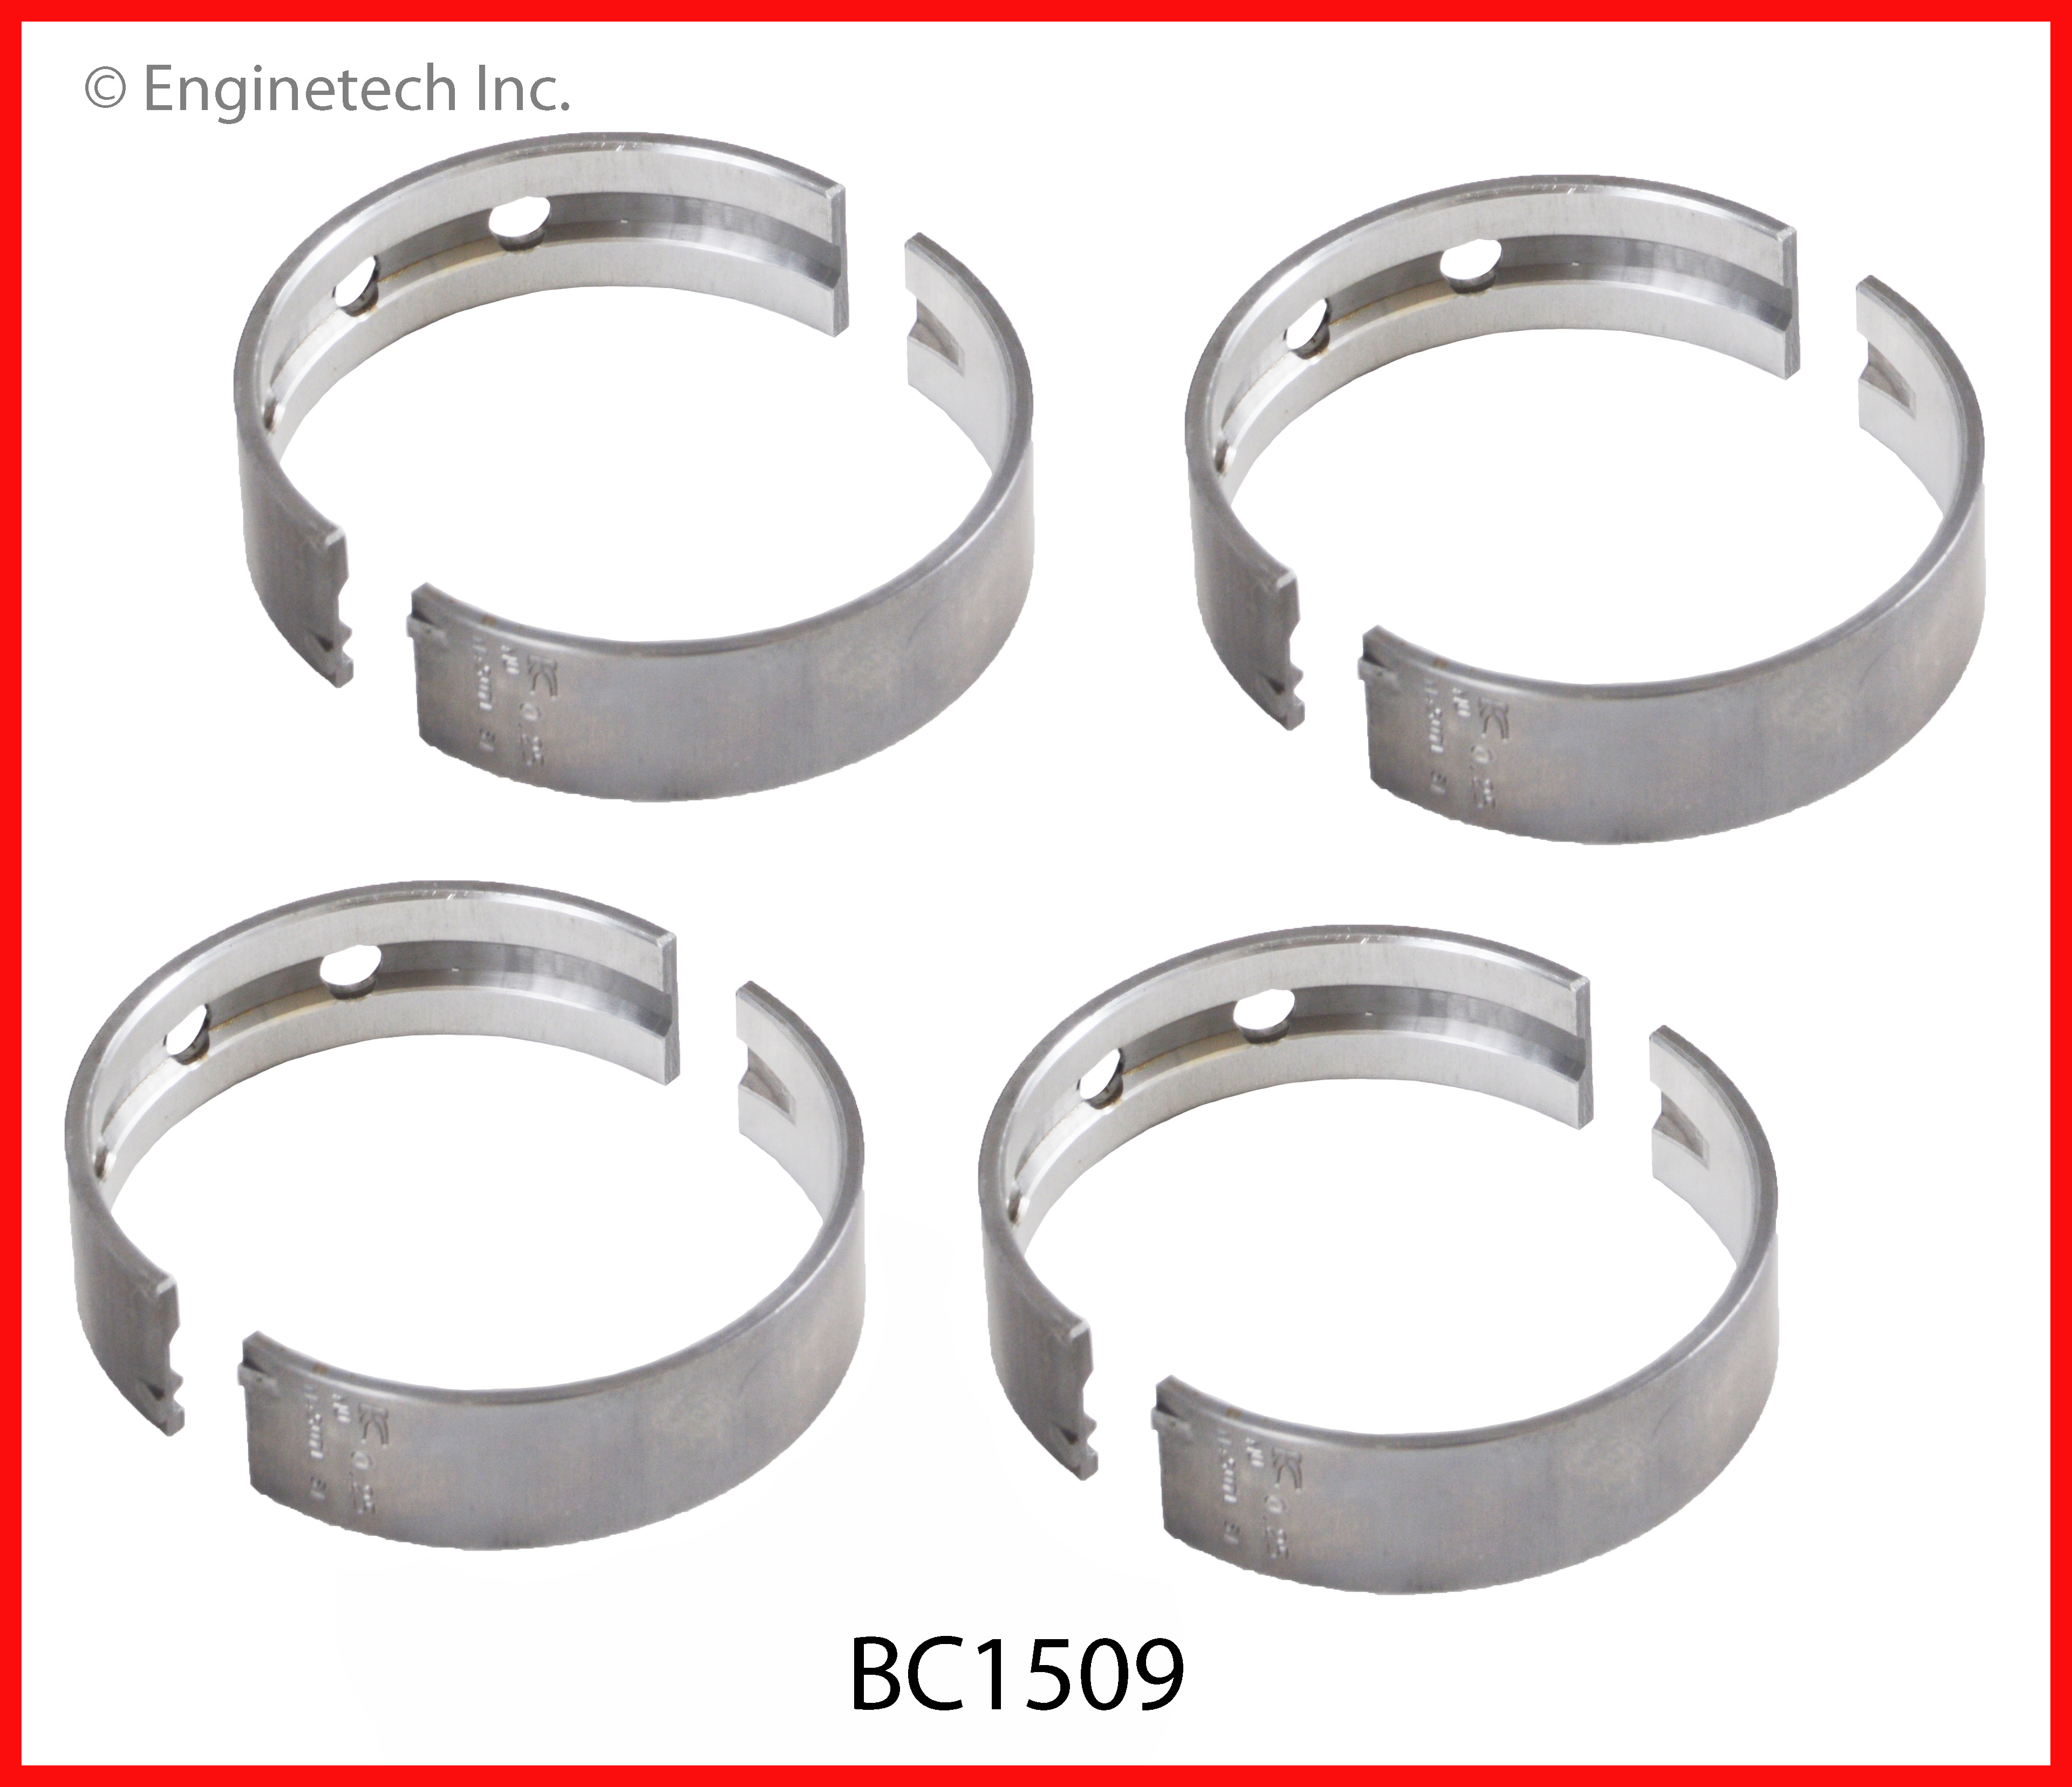 BC1509 Bearing Set - Main Enginetech